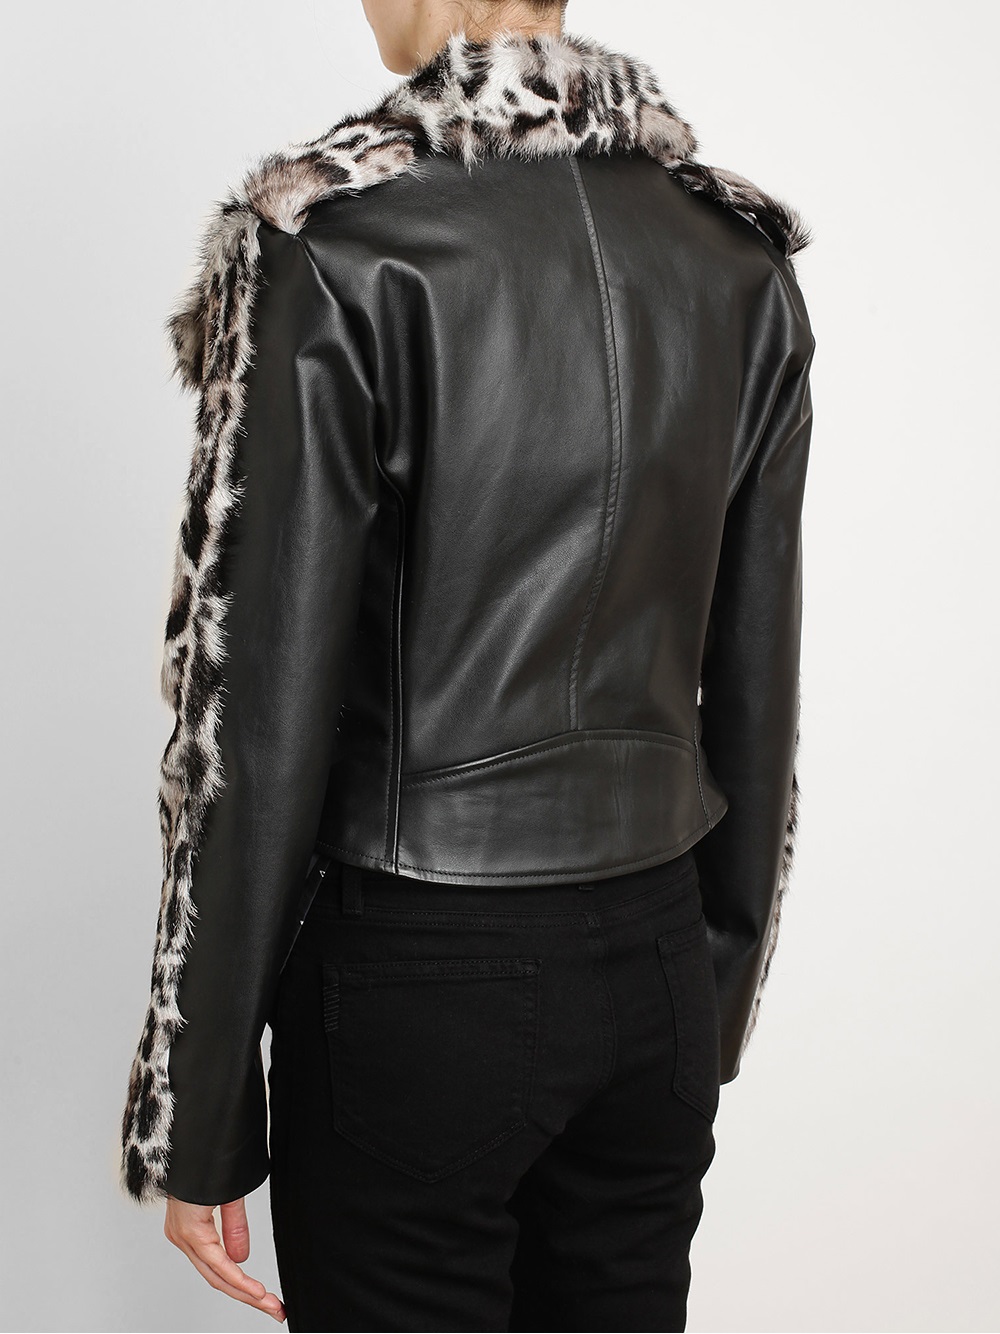 Lyst - Christopher kane Jaguar Leather And Fur Biker Jacket in Gray